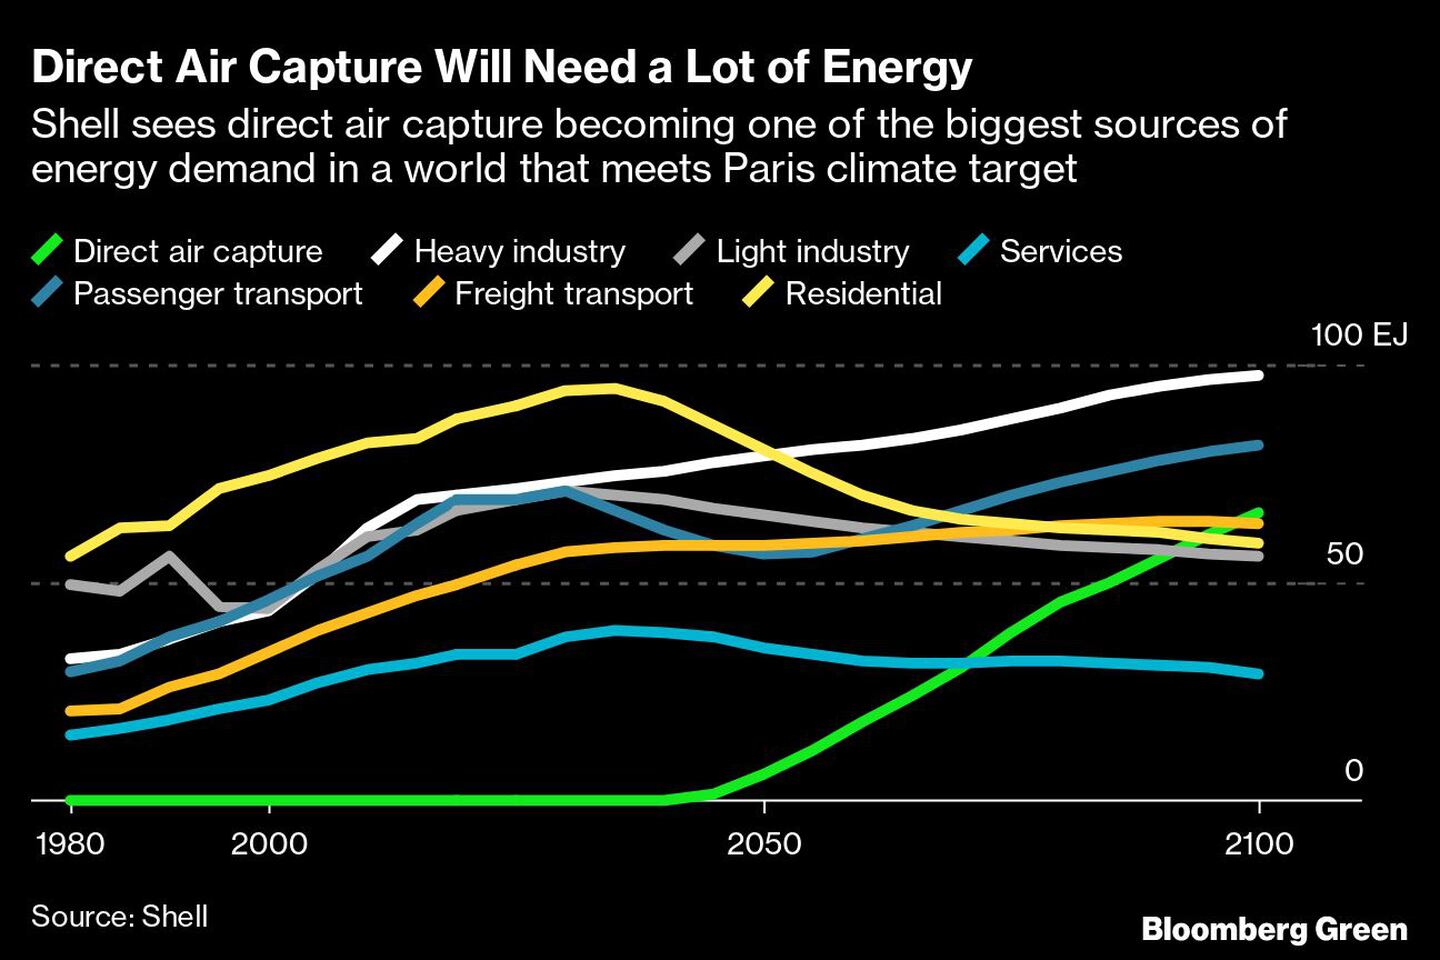  Shell considera que la captura directa de aire se convertirá en una de las mayores fuentes de demanda energética en un mundo que cumpla el objetivo climático de Parísdfd